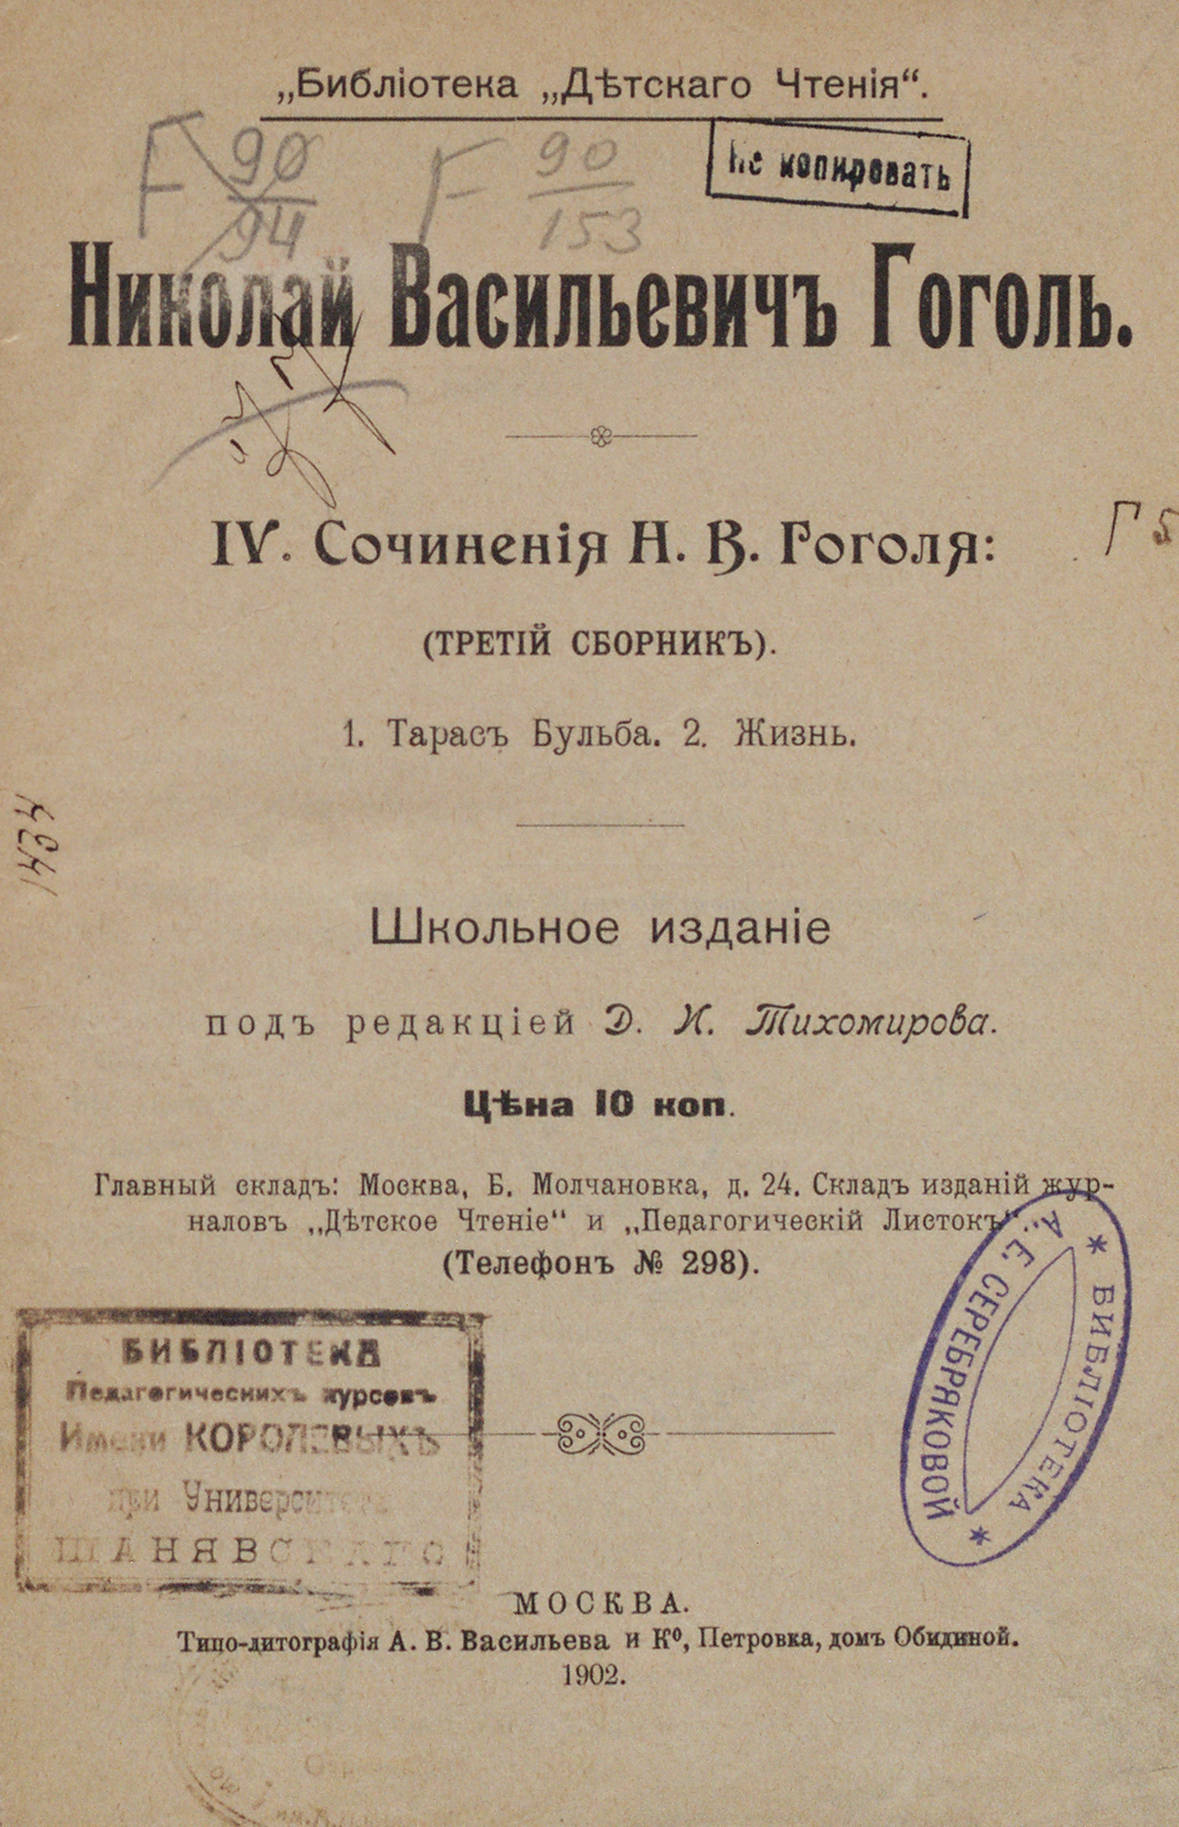 Сочинения Н. В. Гоголя: школьное издание под редакцией Д. И. Тихомирова: третий сборник